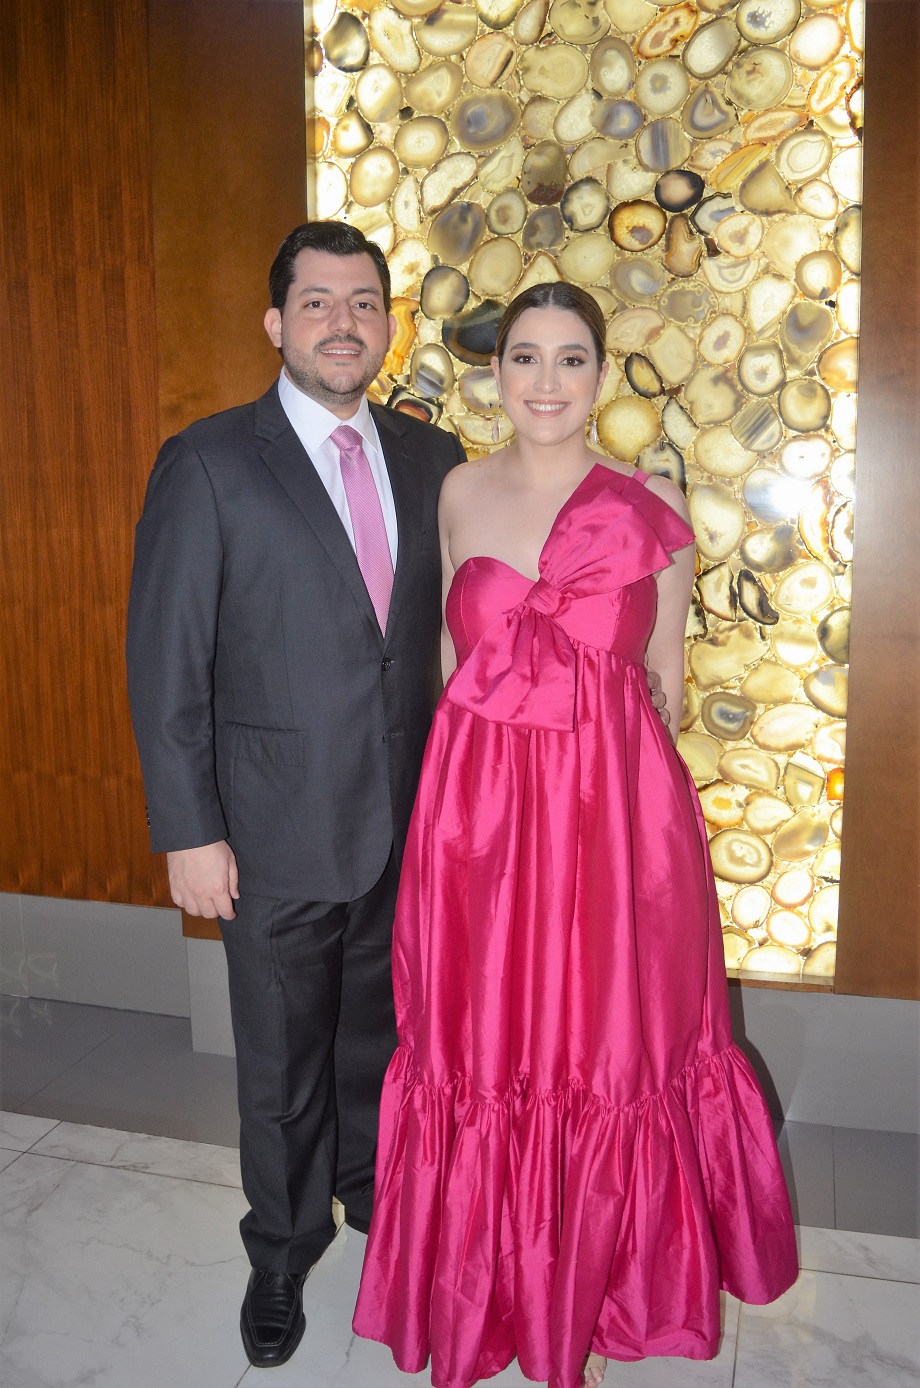 Elegancia y romanticismo en la boda Luis Diego Ortez y Stephanie Ewens